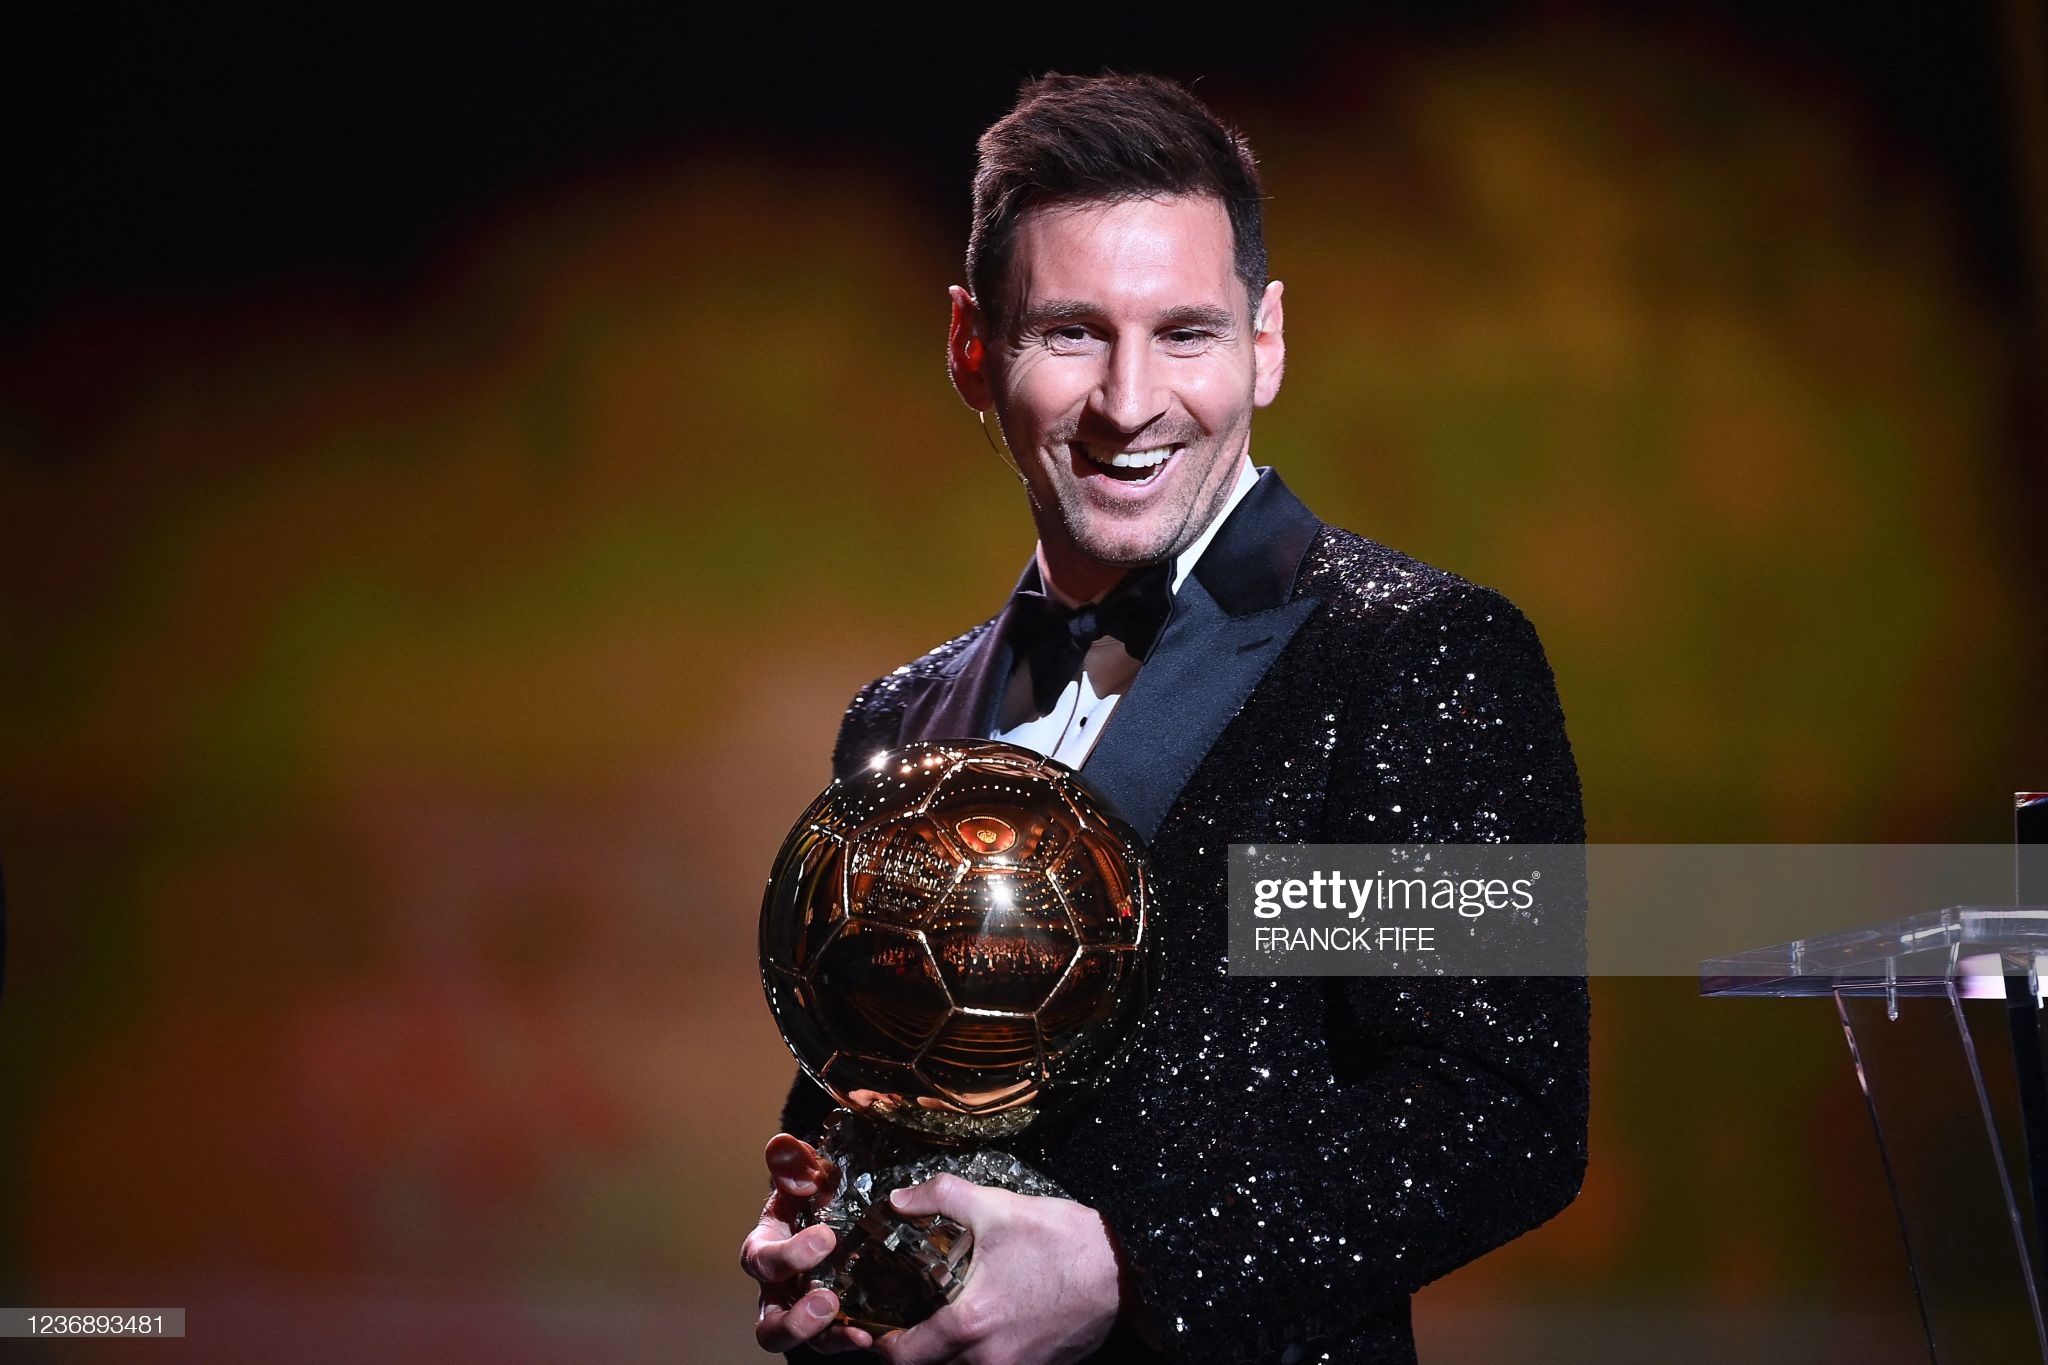 Lionel Messi 2021-yilgi “Oltin to‘p” sohibiga aylandi. Bu “Oltin to‘p” uning faoliyatidagi yettinchisi bo‘ldi.